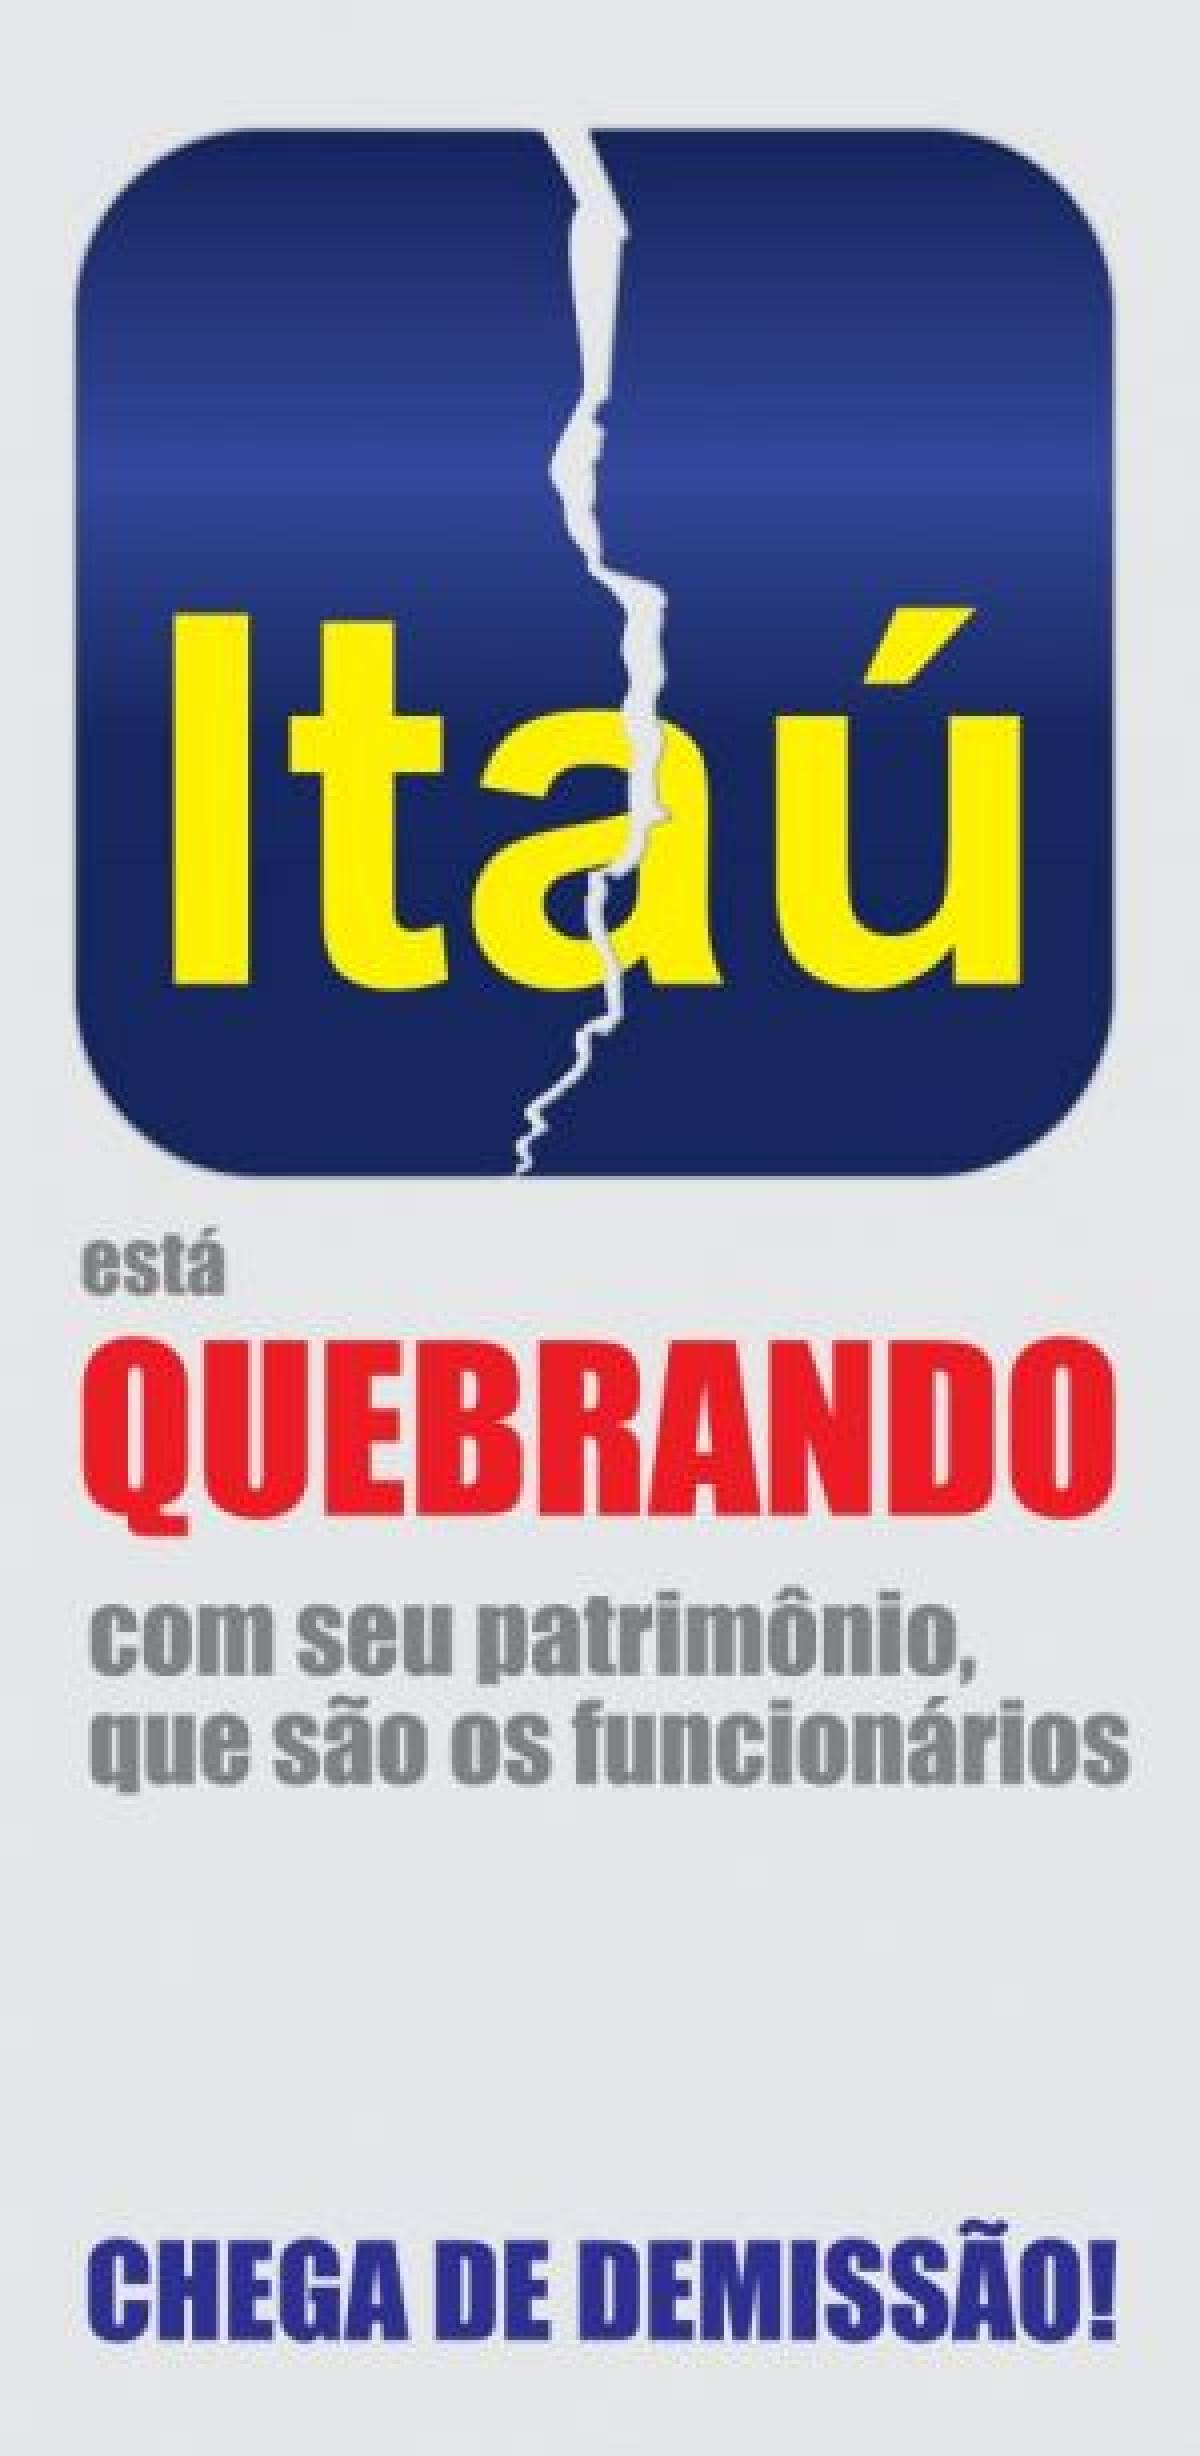 Enquanto demite, Itaú anuncia compra de novas ações de empresa aérea   